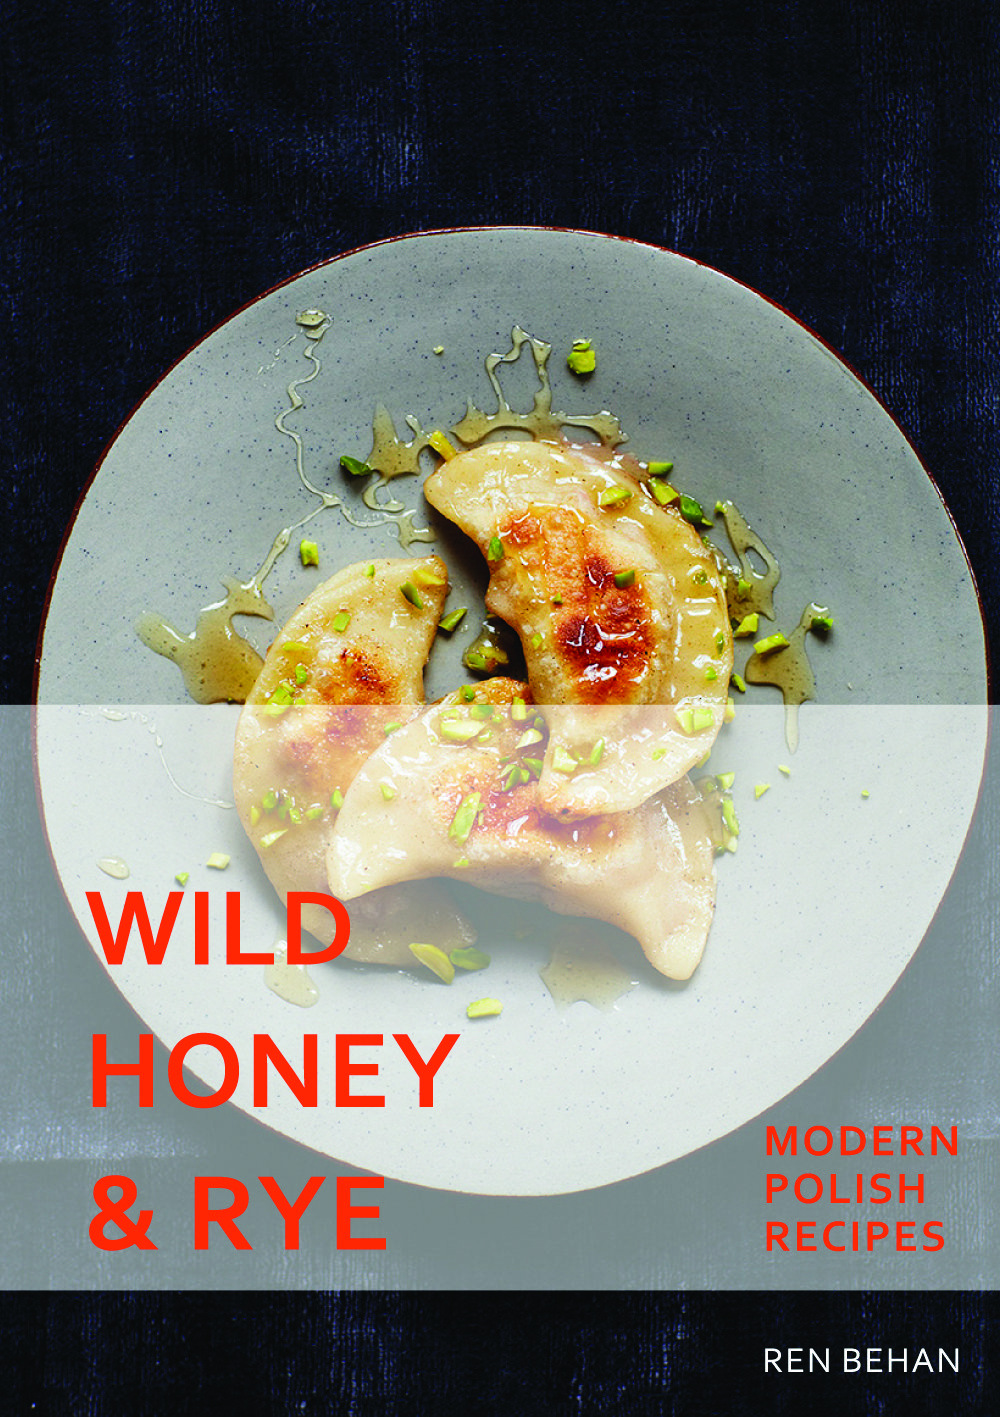 5 Polish Recipes from Wild Honey and Rye